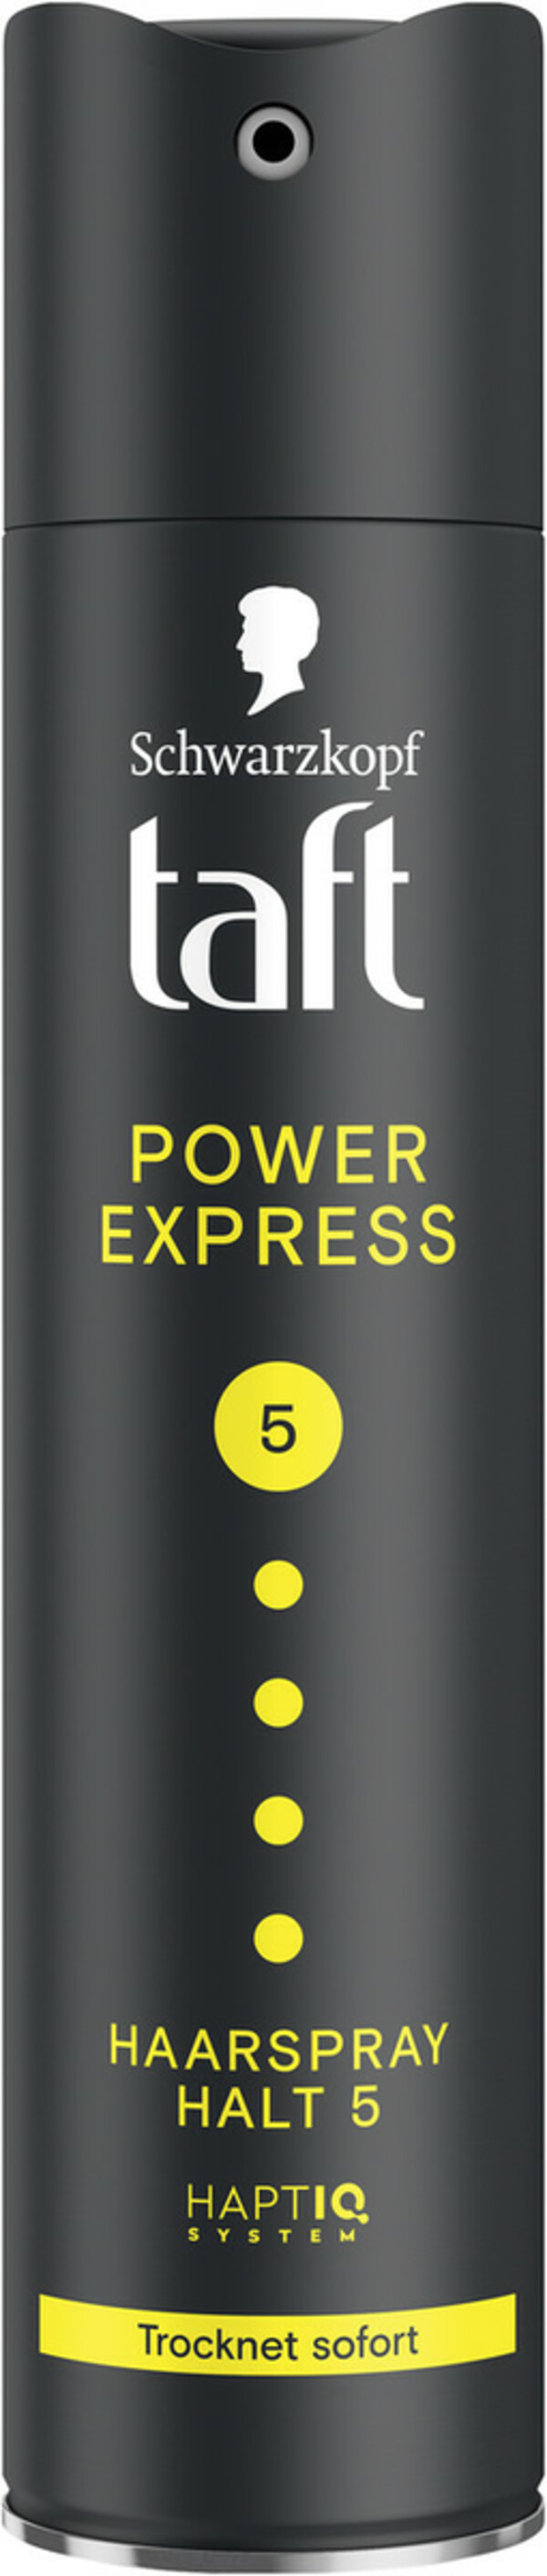 Bild 1 von Schwarzkopf Taft Haarspray Power Express Halt 5 250ML